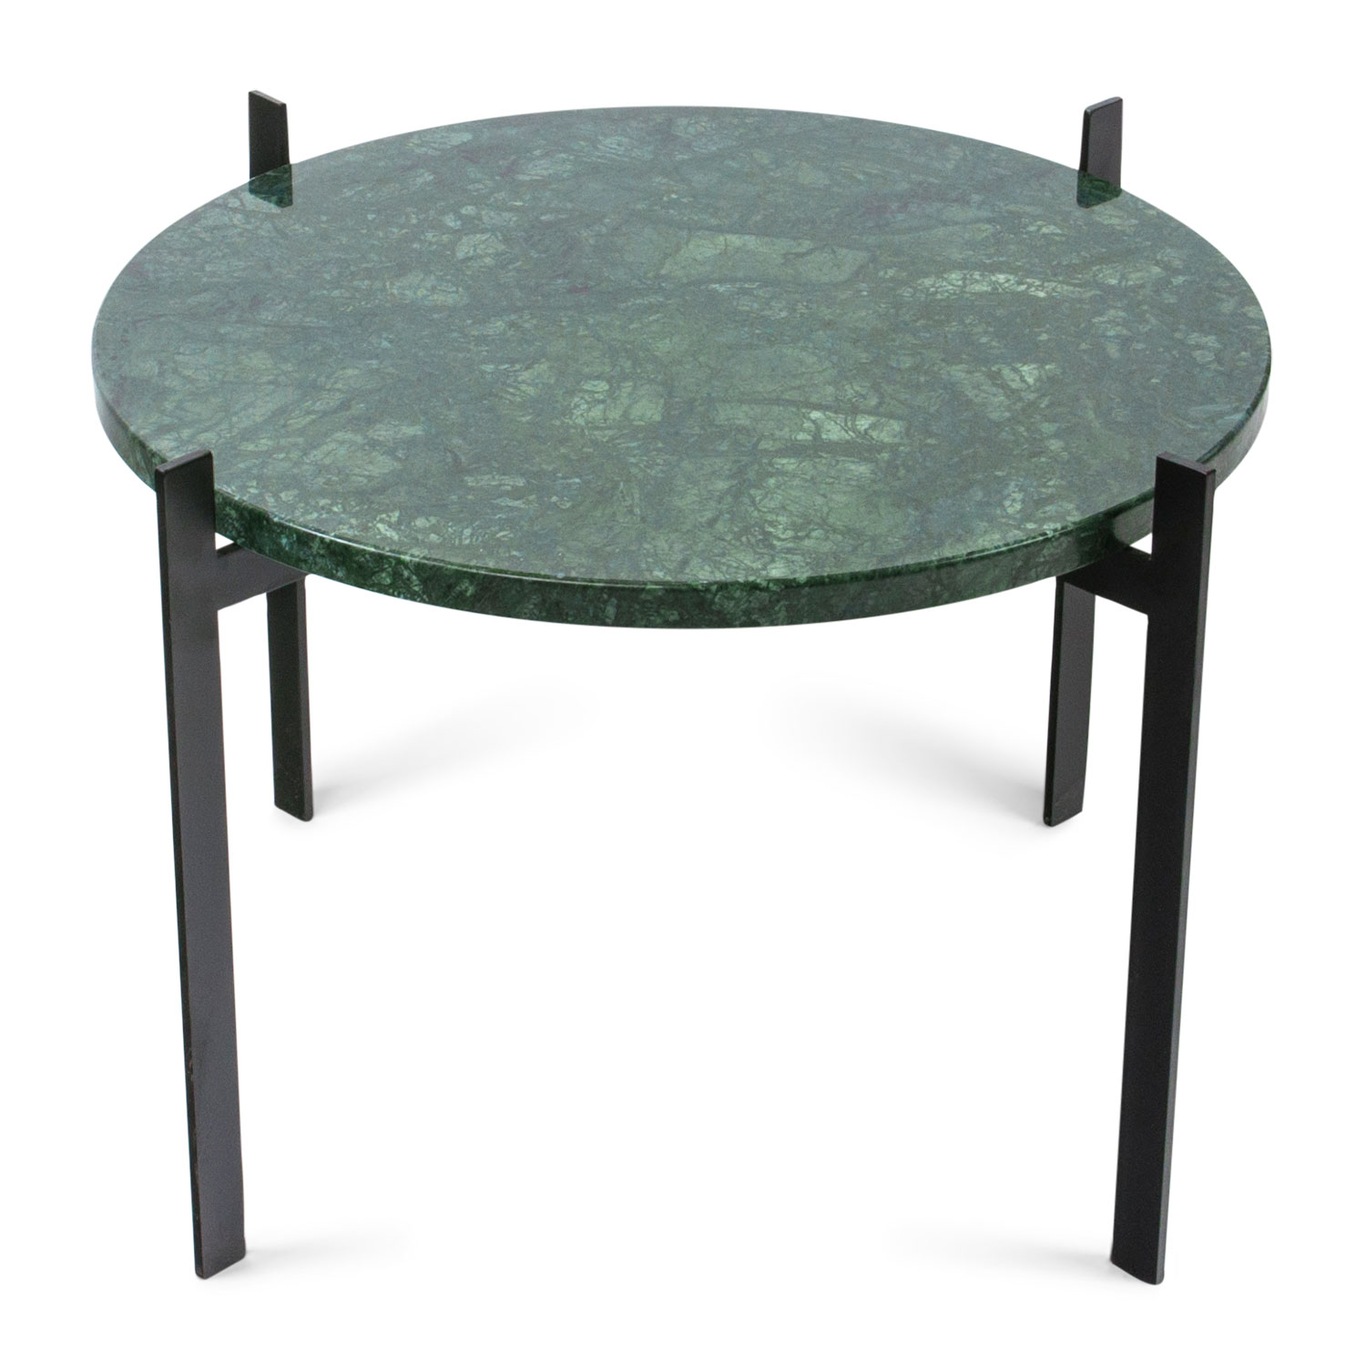 Single Deck Pöytä, Vihreä Marmori/Musta